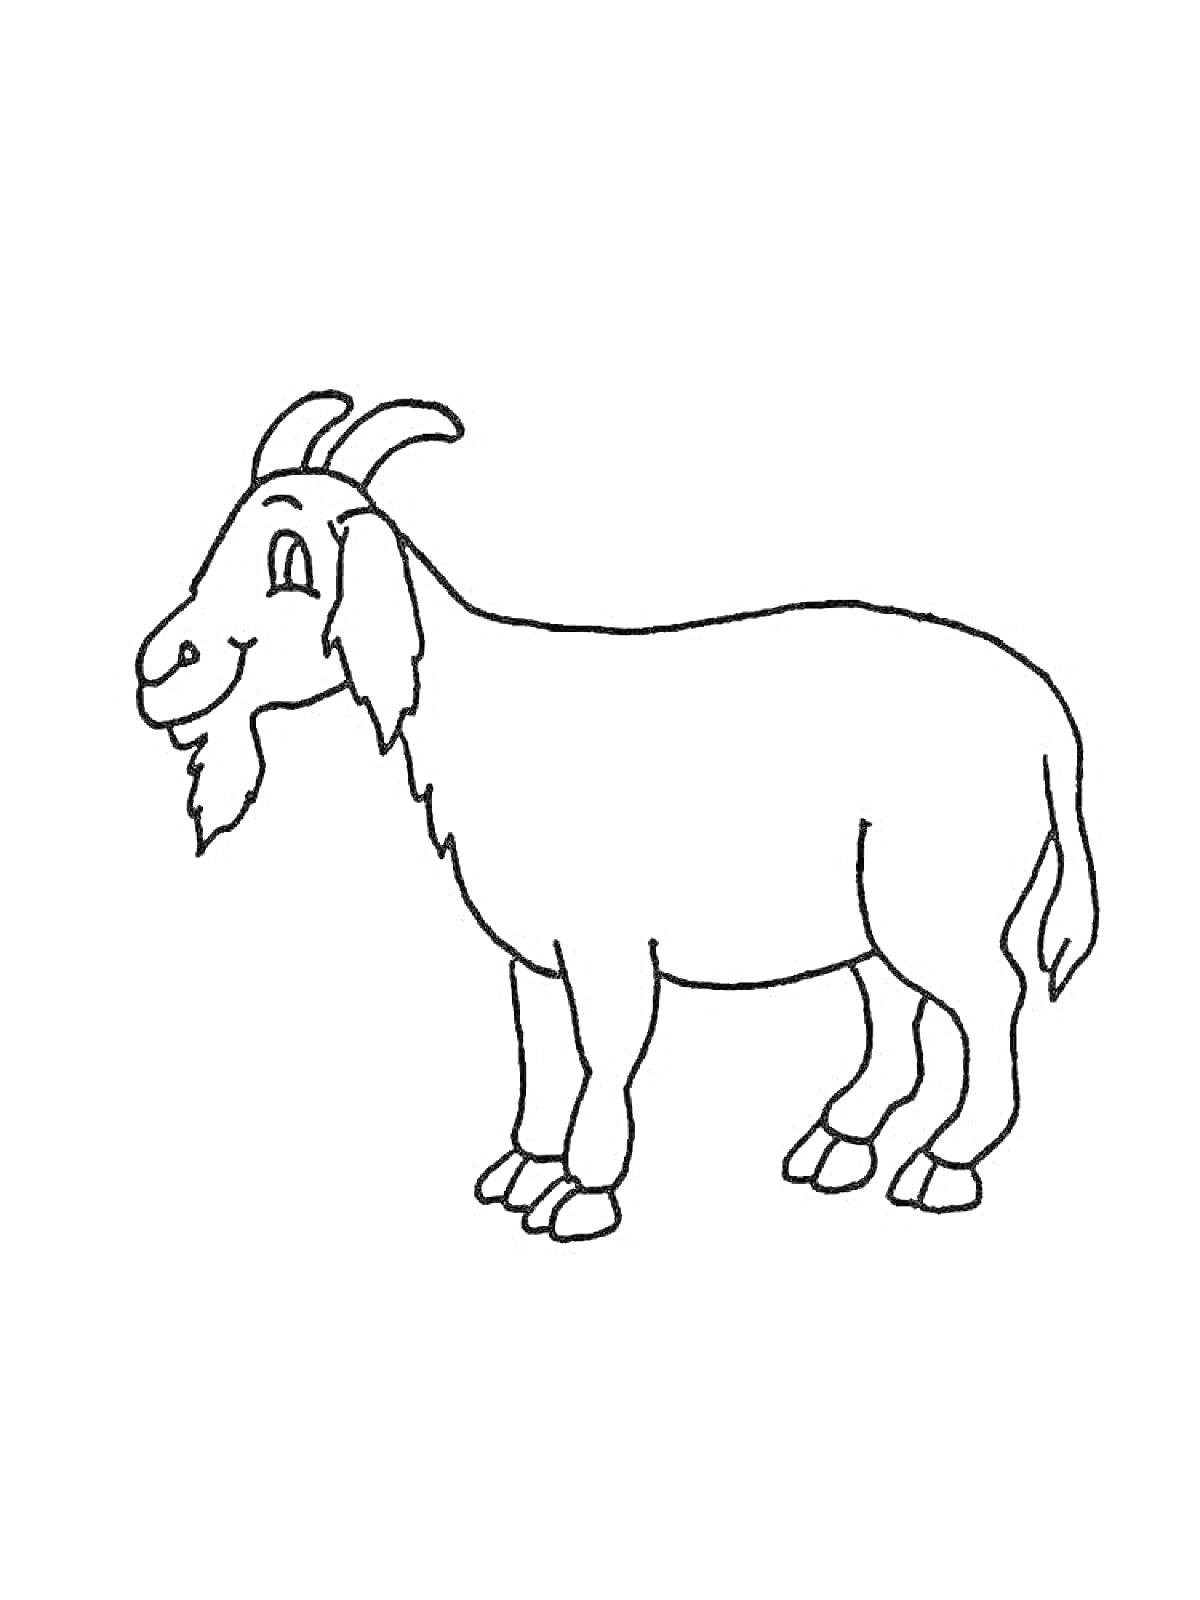 Раскраска Козел, стоящий на четырех ногах, с бородкой и рогами